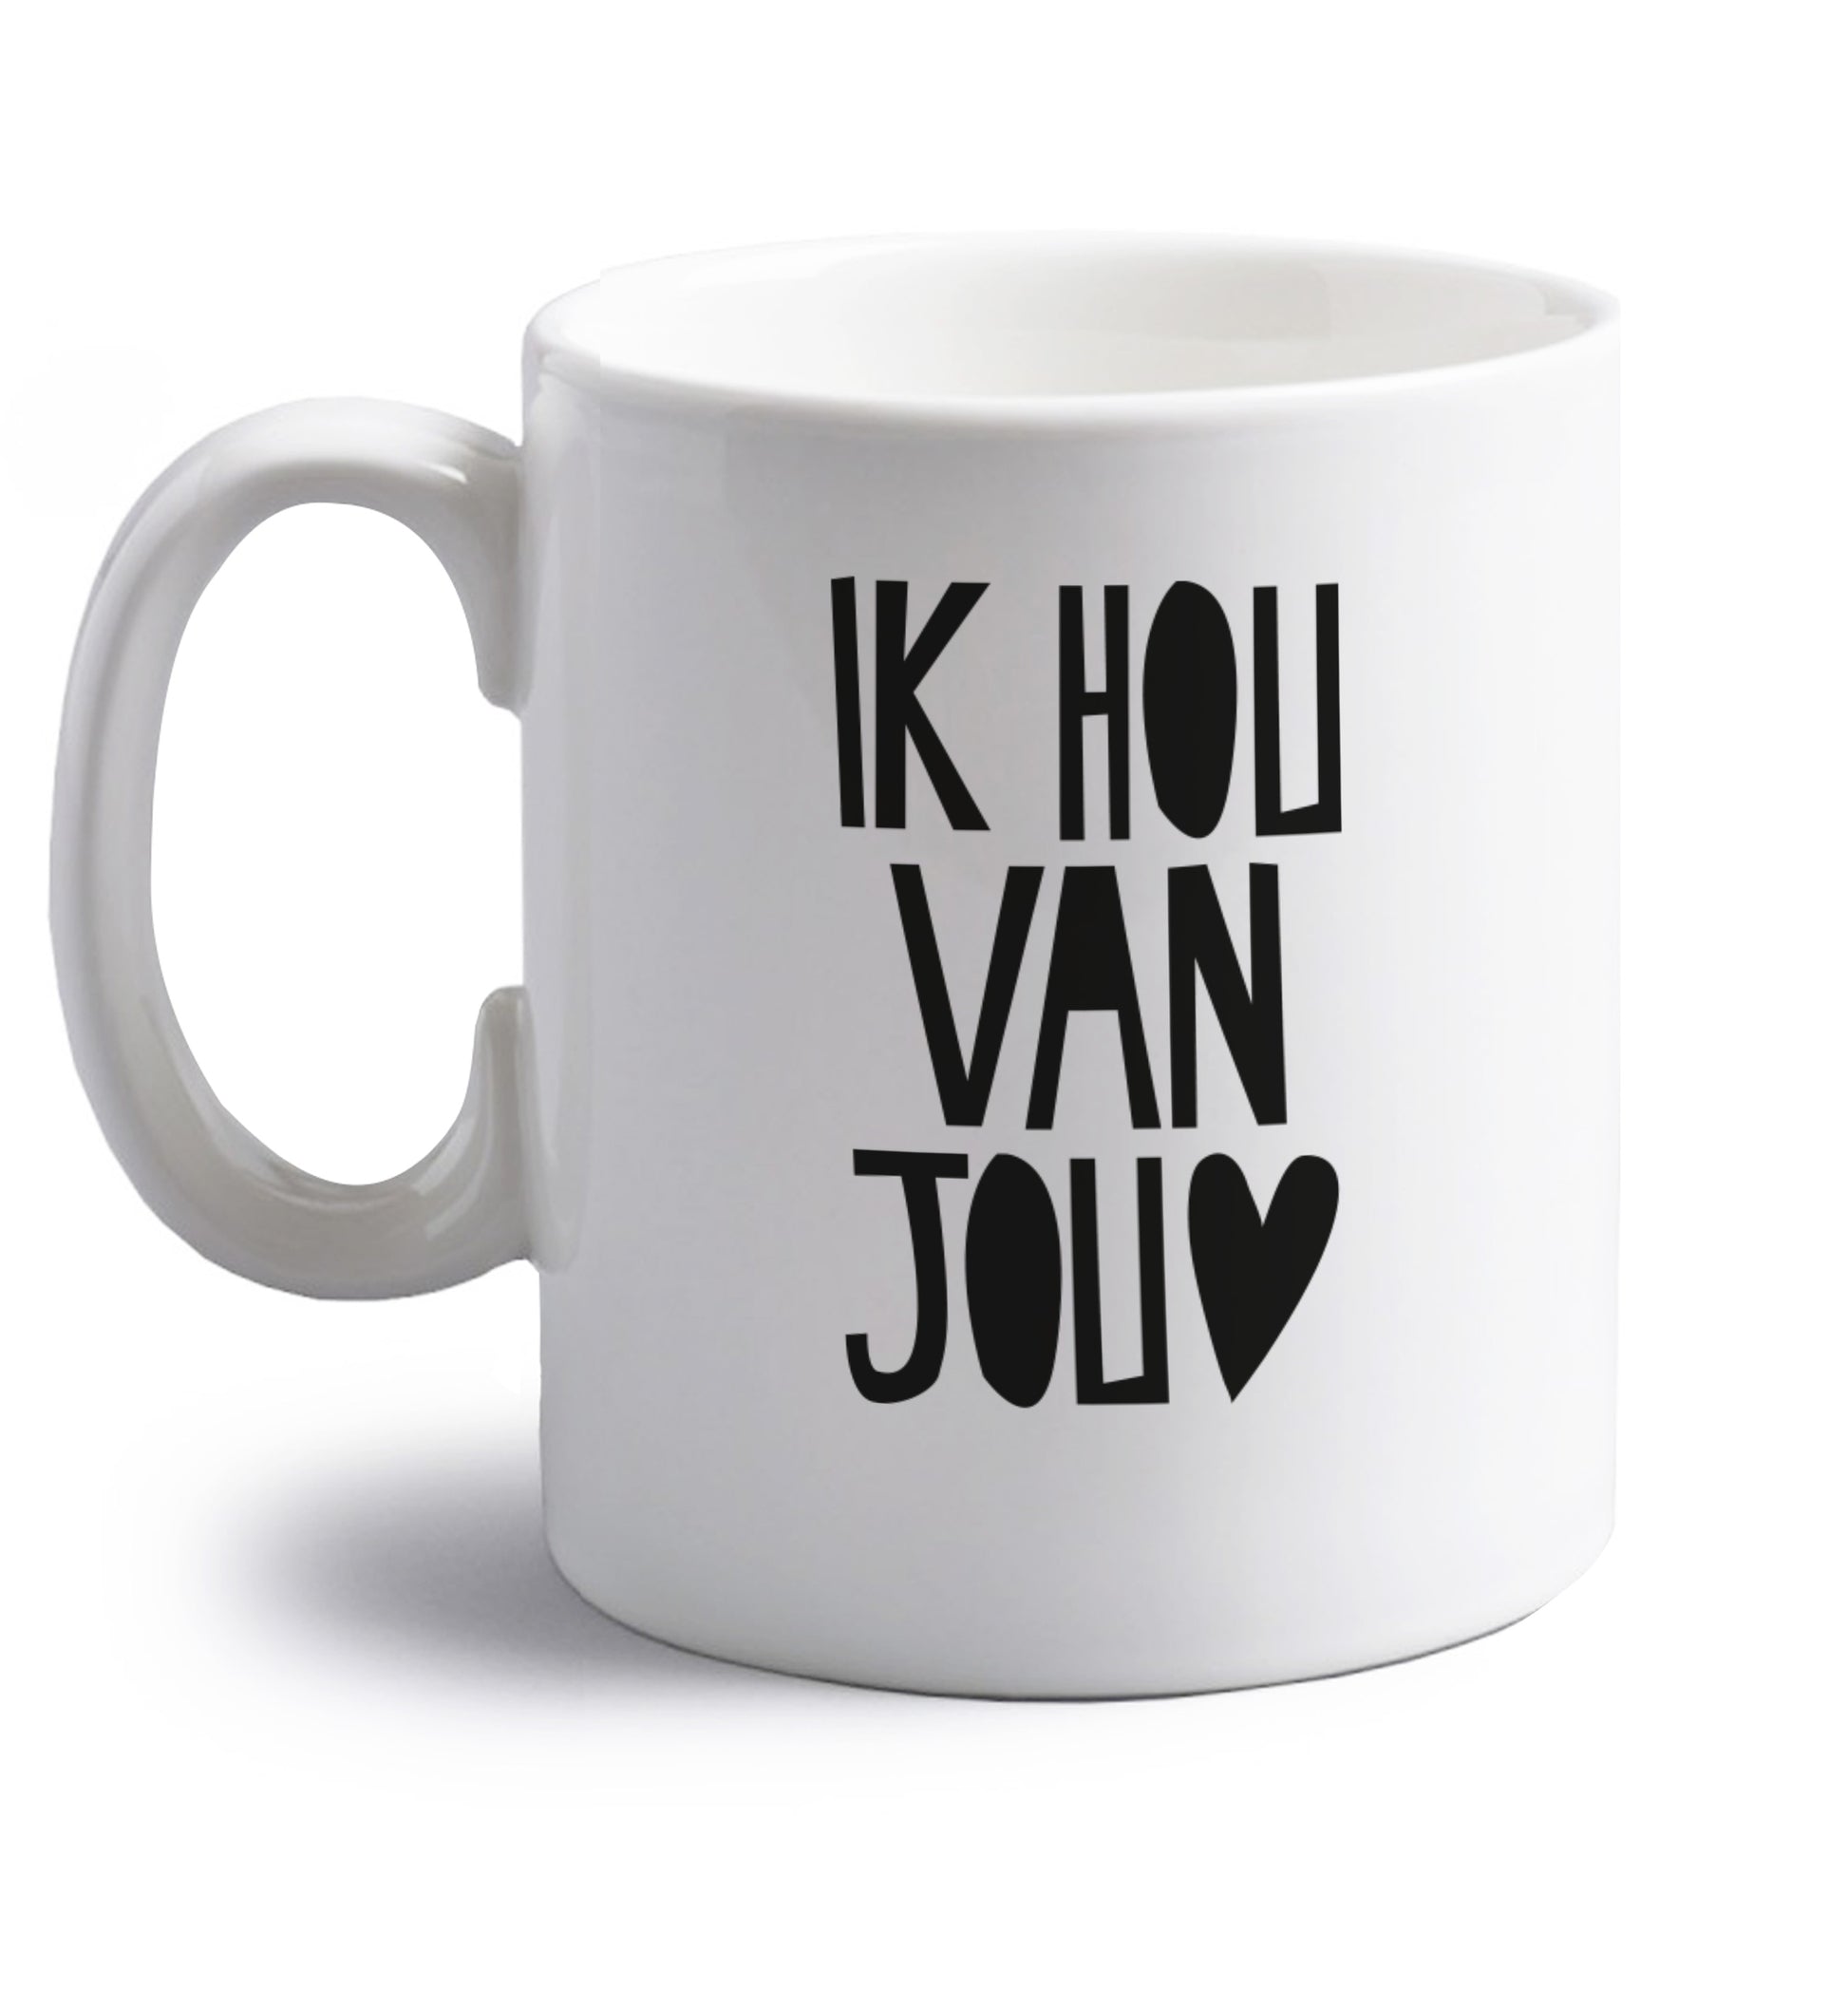 Ik Hau Van Jou - I love you right handed white ceramic mug 